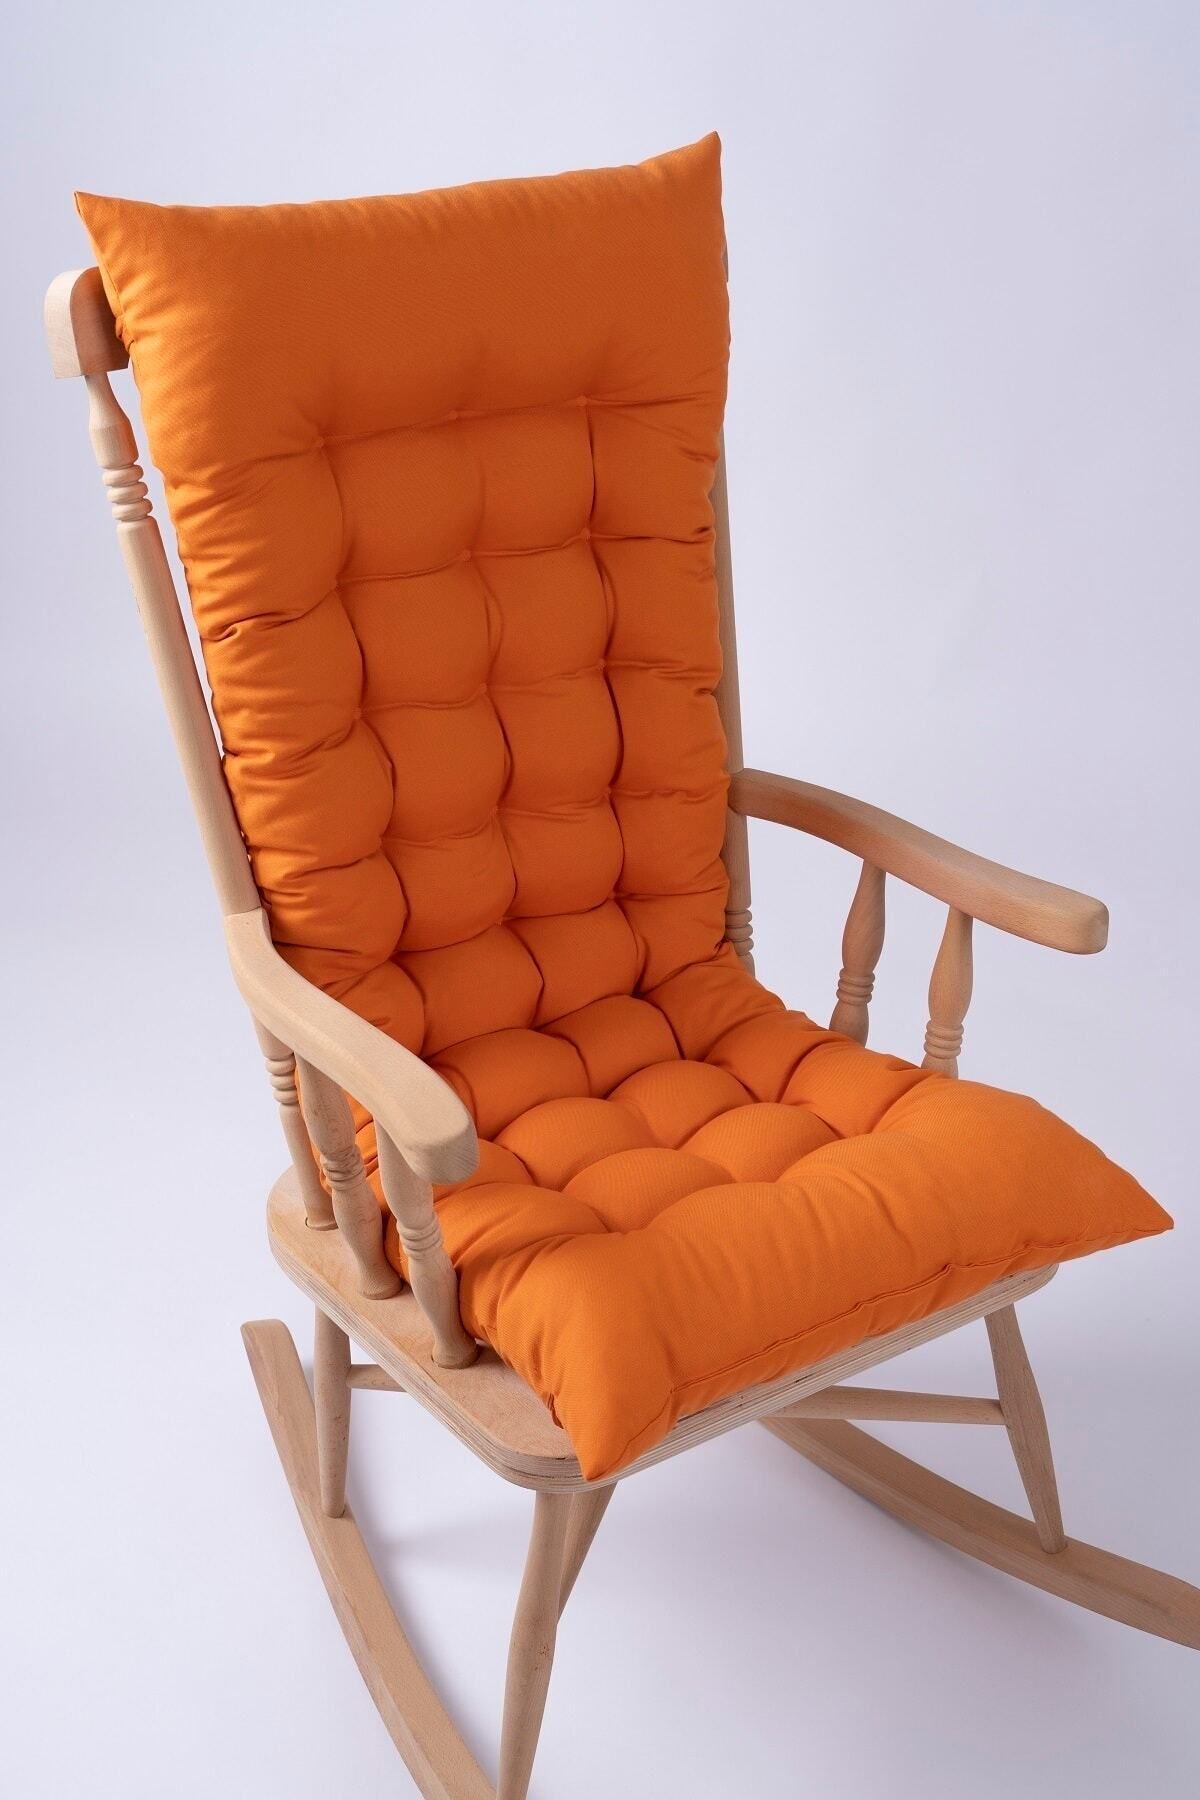 ALTINPAMUK Selen Lüx Sallanan Sandalye, Bank, Salıncak Minderi 120x50cm Turuncu (SADECE MİNDER)